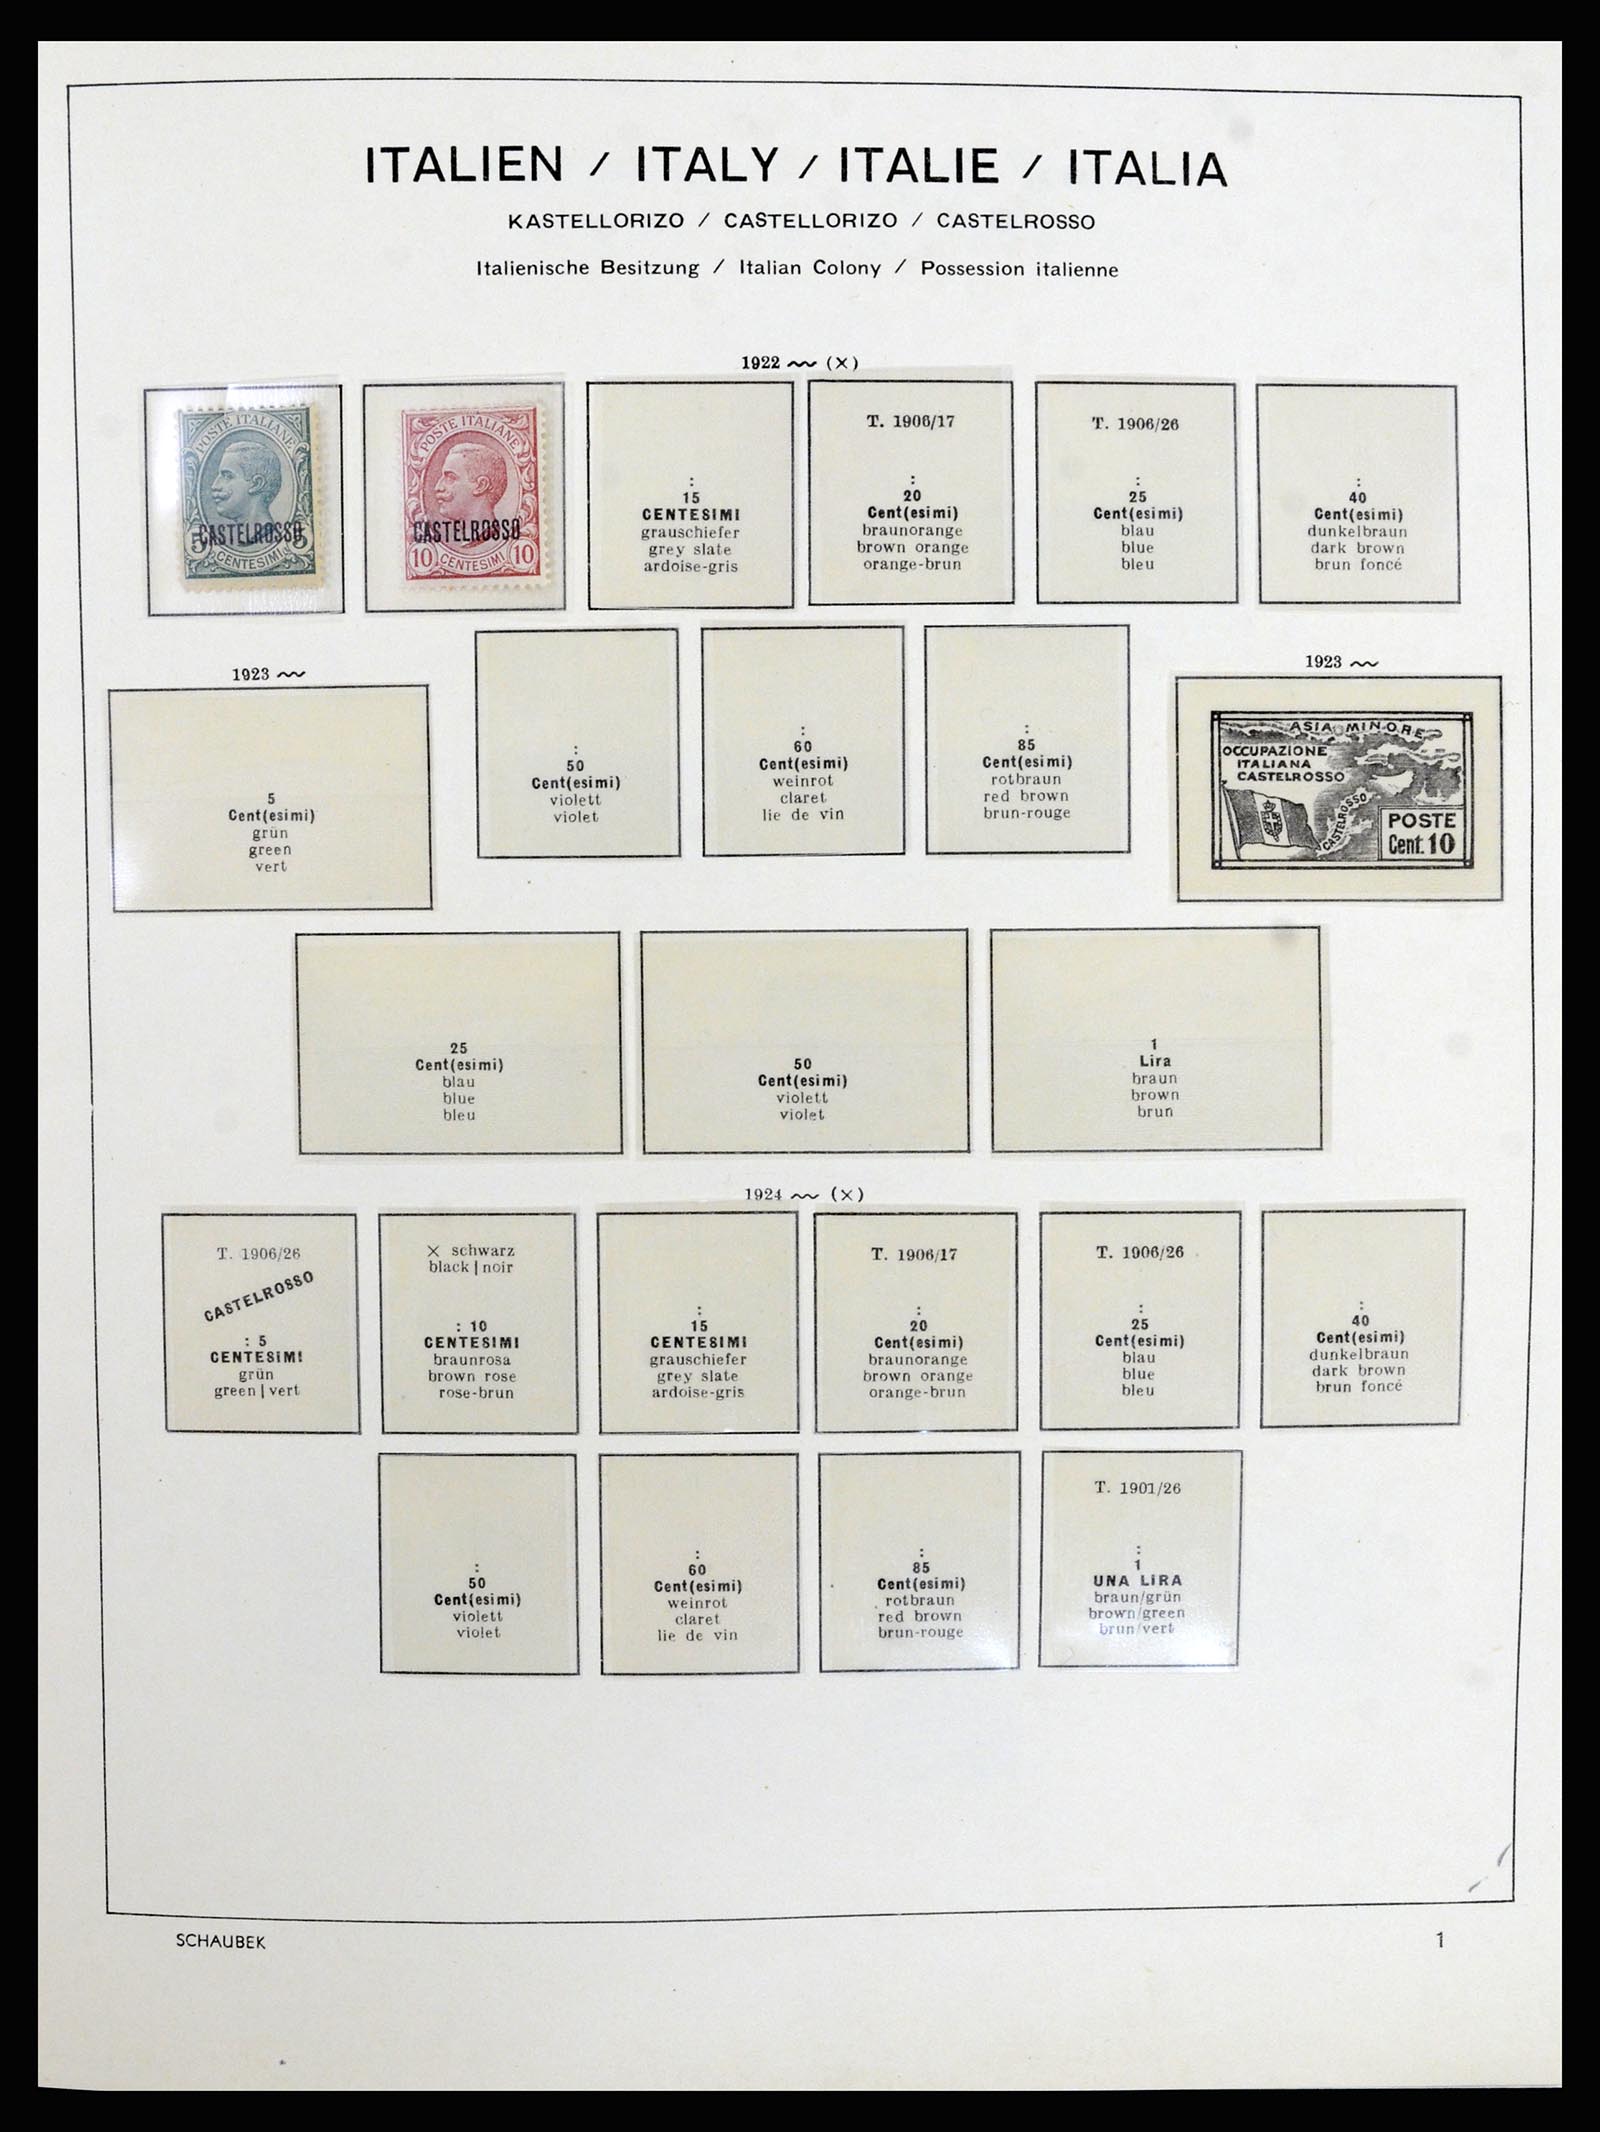 36577 001 - Stamp collection 36577 Italiaanse gebieden 1870-1940.